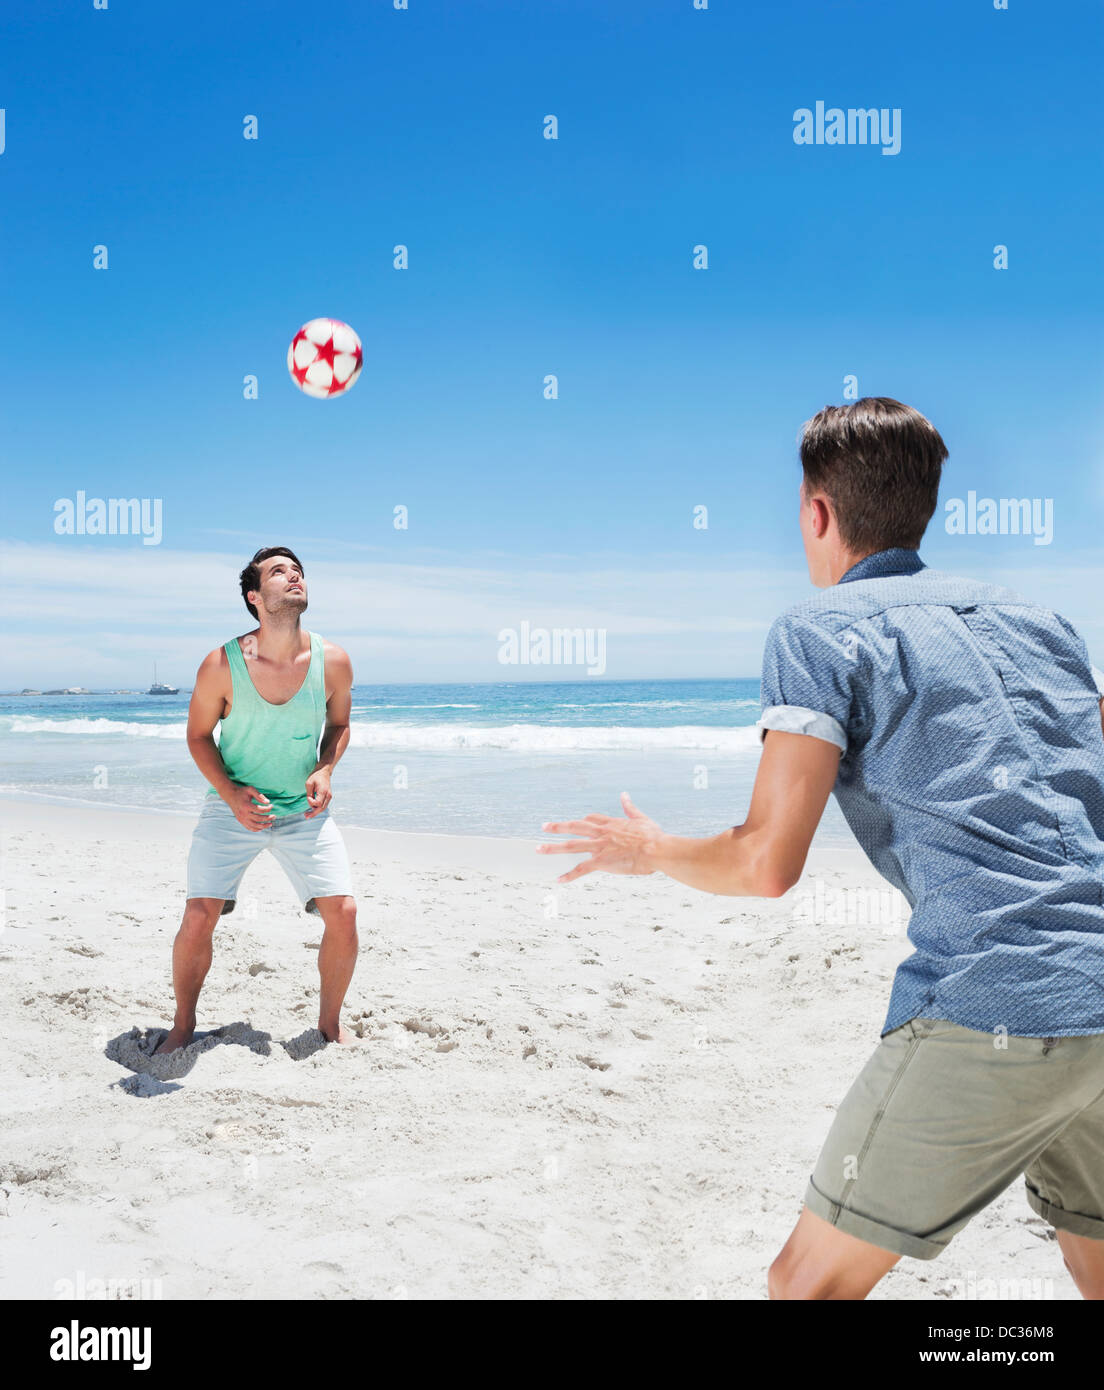 La position de l'homme ballon de soccer on beach Banque D'Images